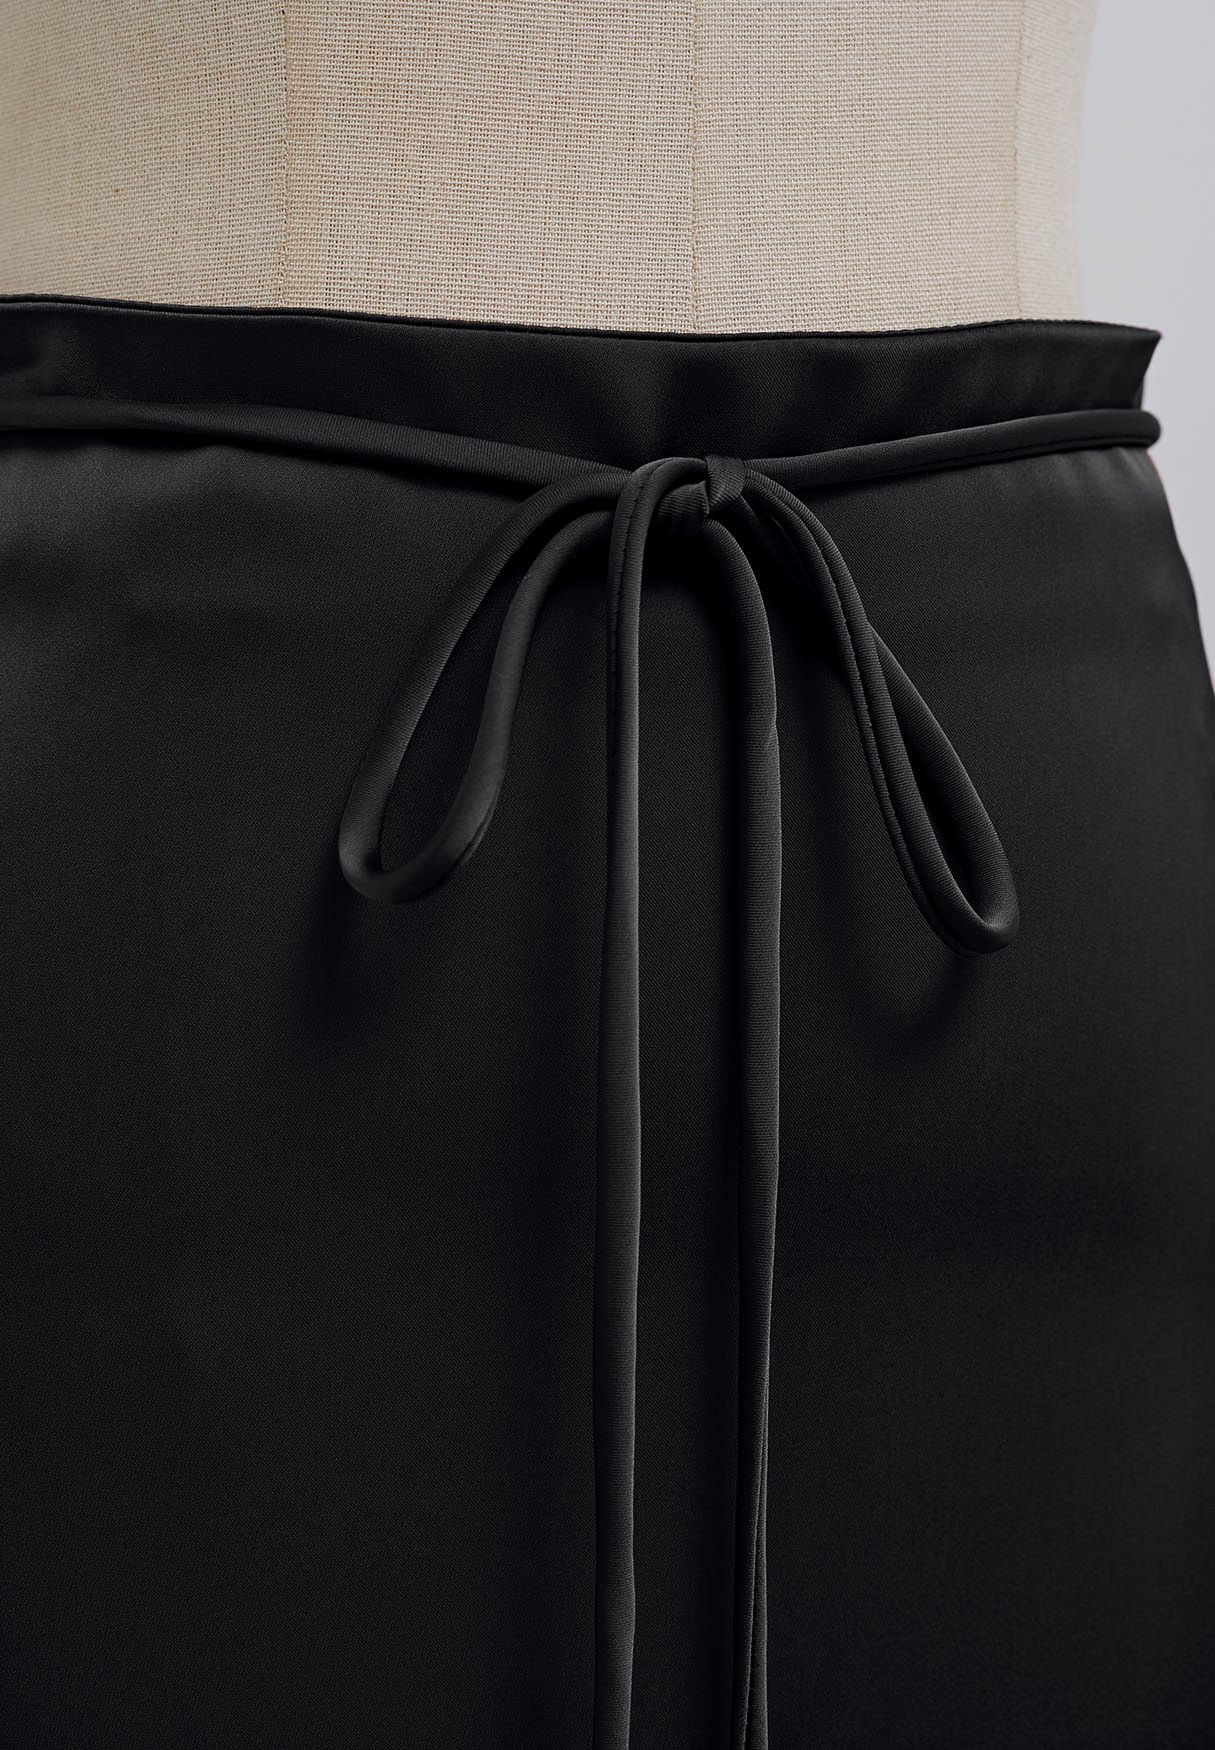 Tie String Satin Maxi Skirt in Black